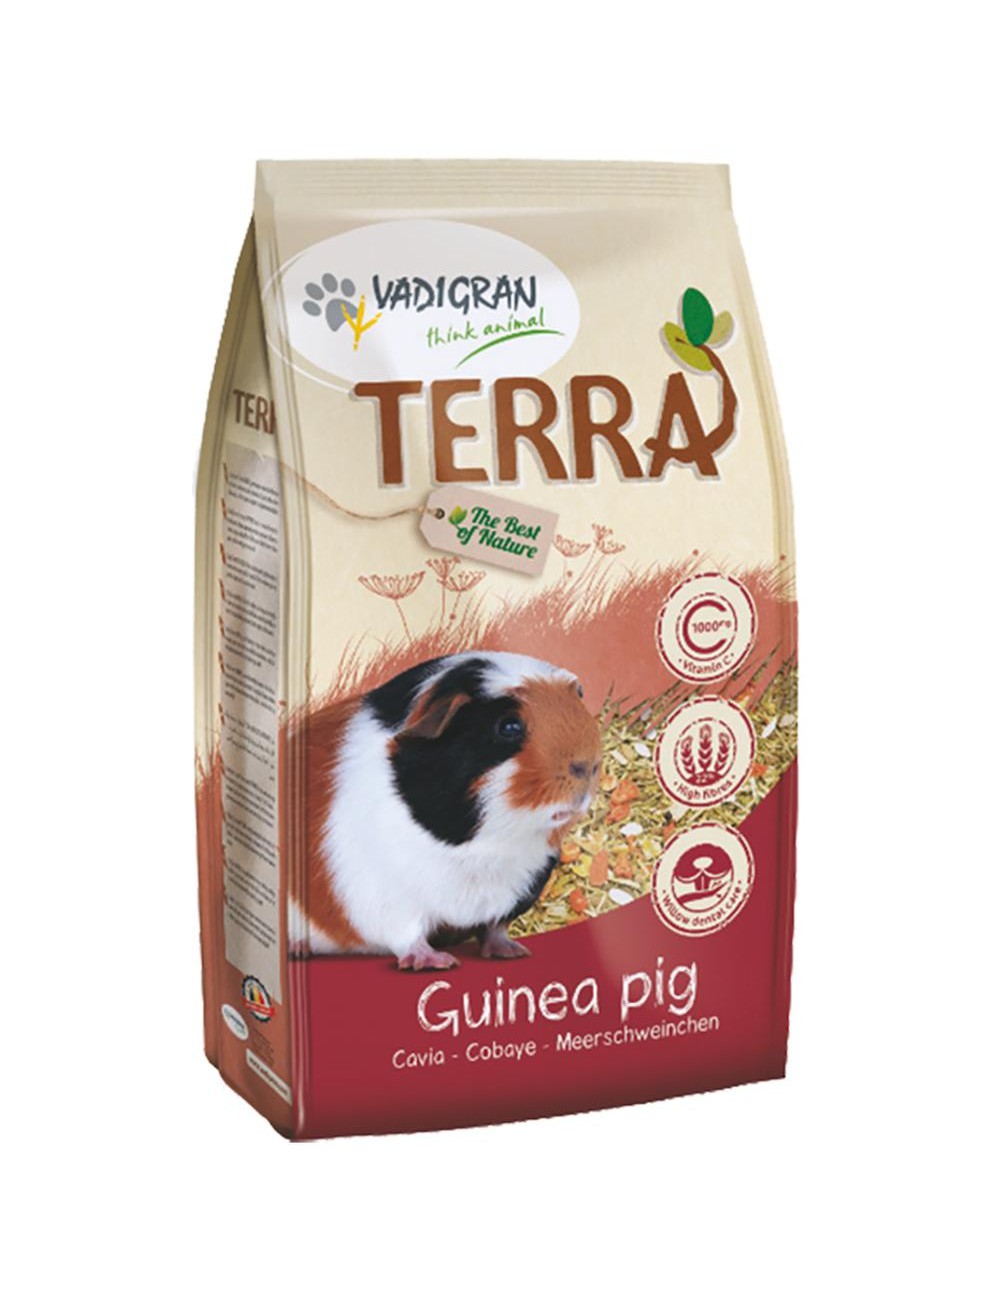 TERRA COBAYAS  GUINEA PIG  1KG